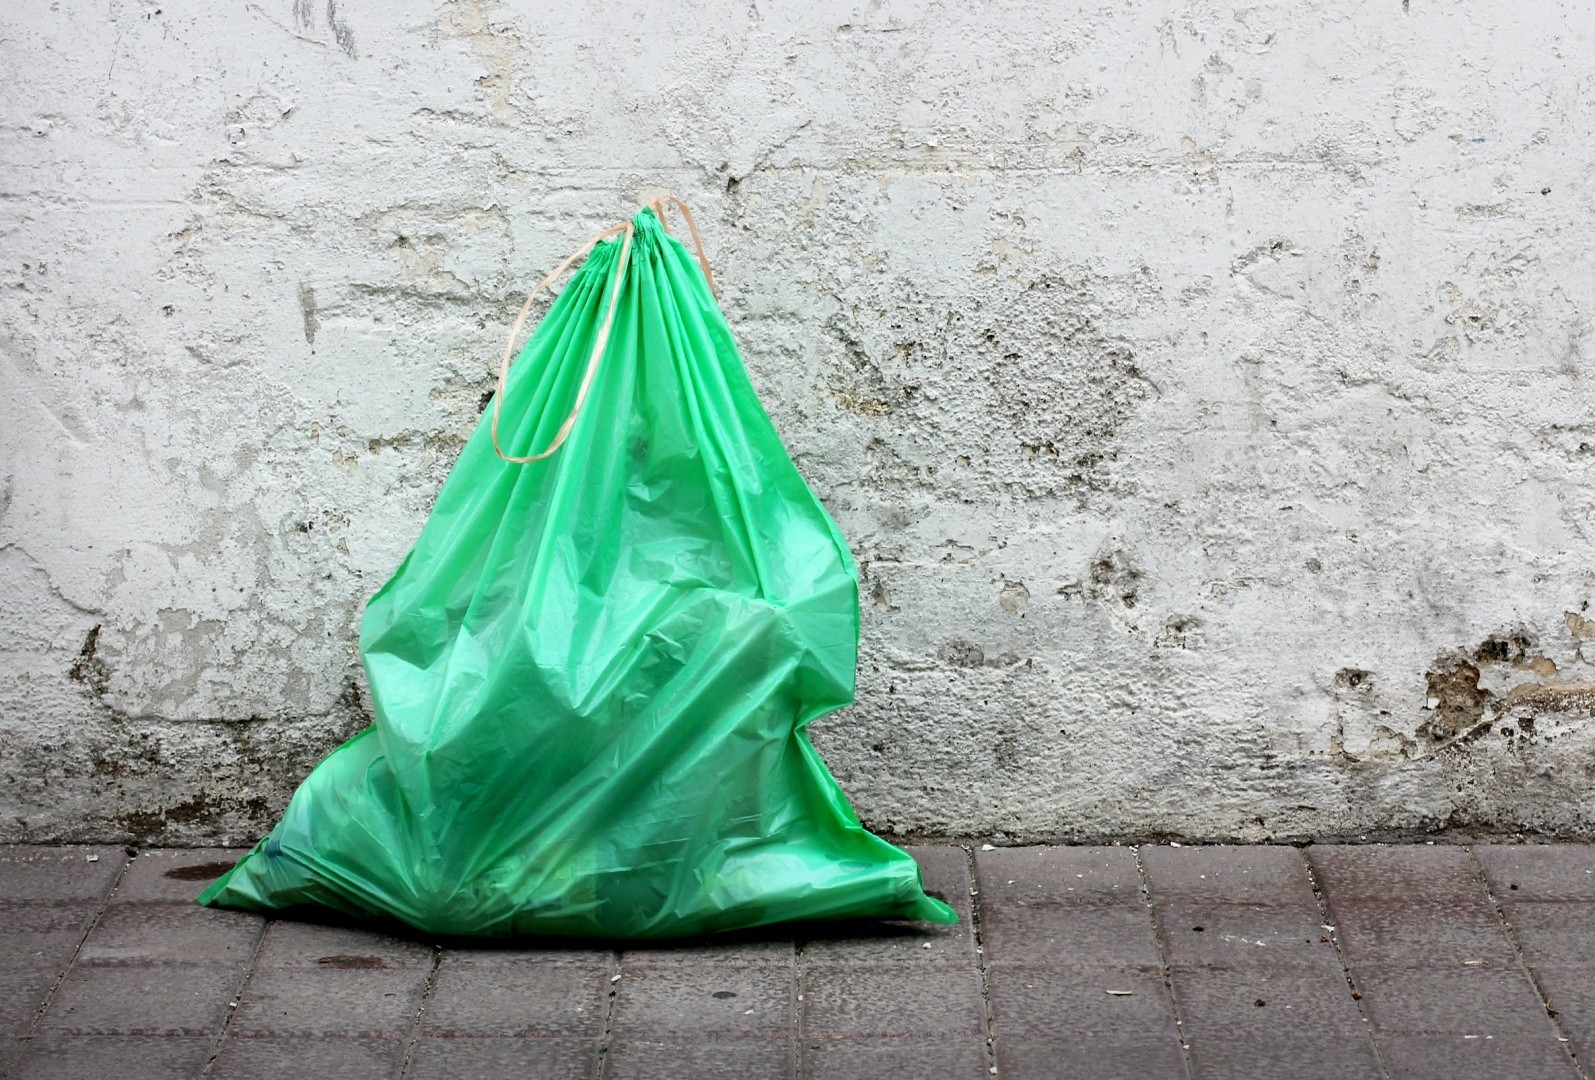 О пластиковых пакетах: выбросить нельзя, переработать